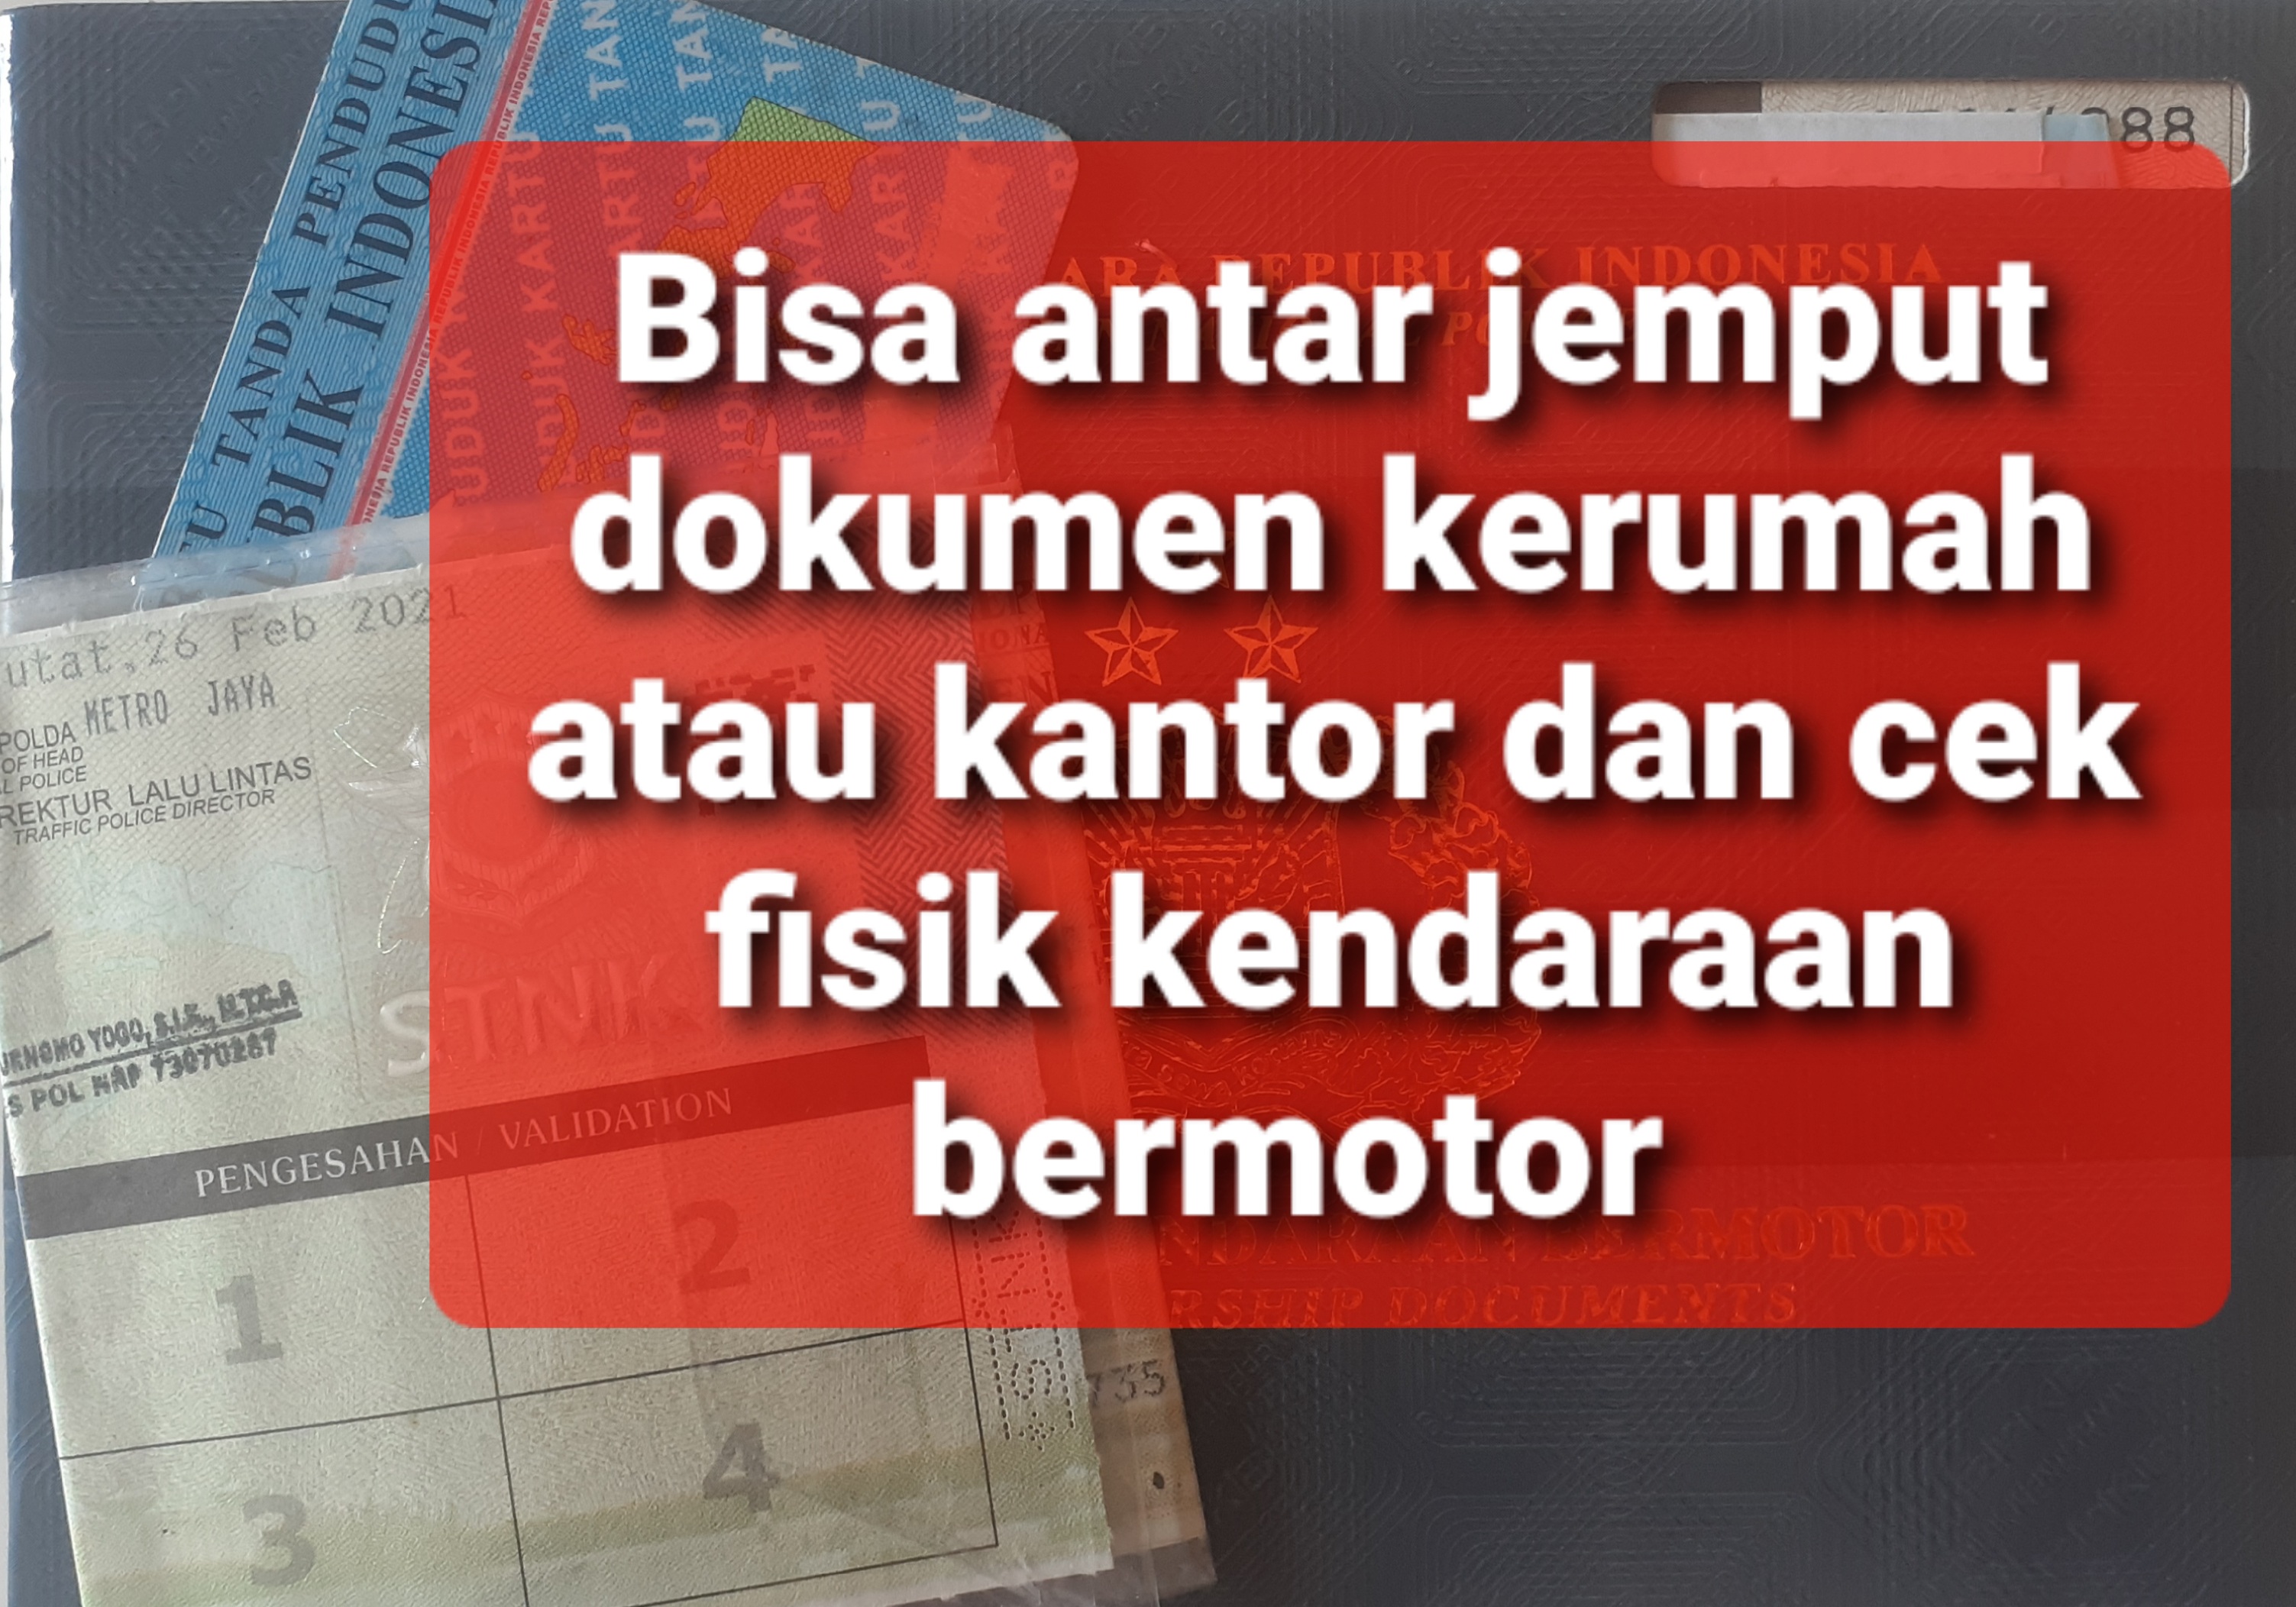 Jasa pengurusan mutasi mobil dari Jakarta ke Padang - MUTASI JAKARTA PADANG